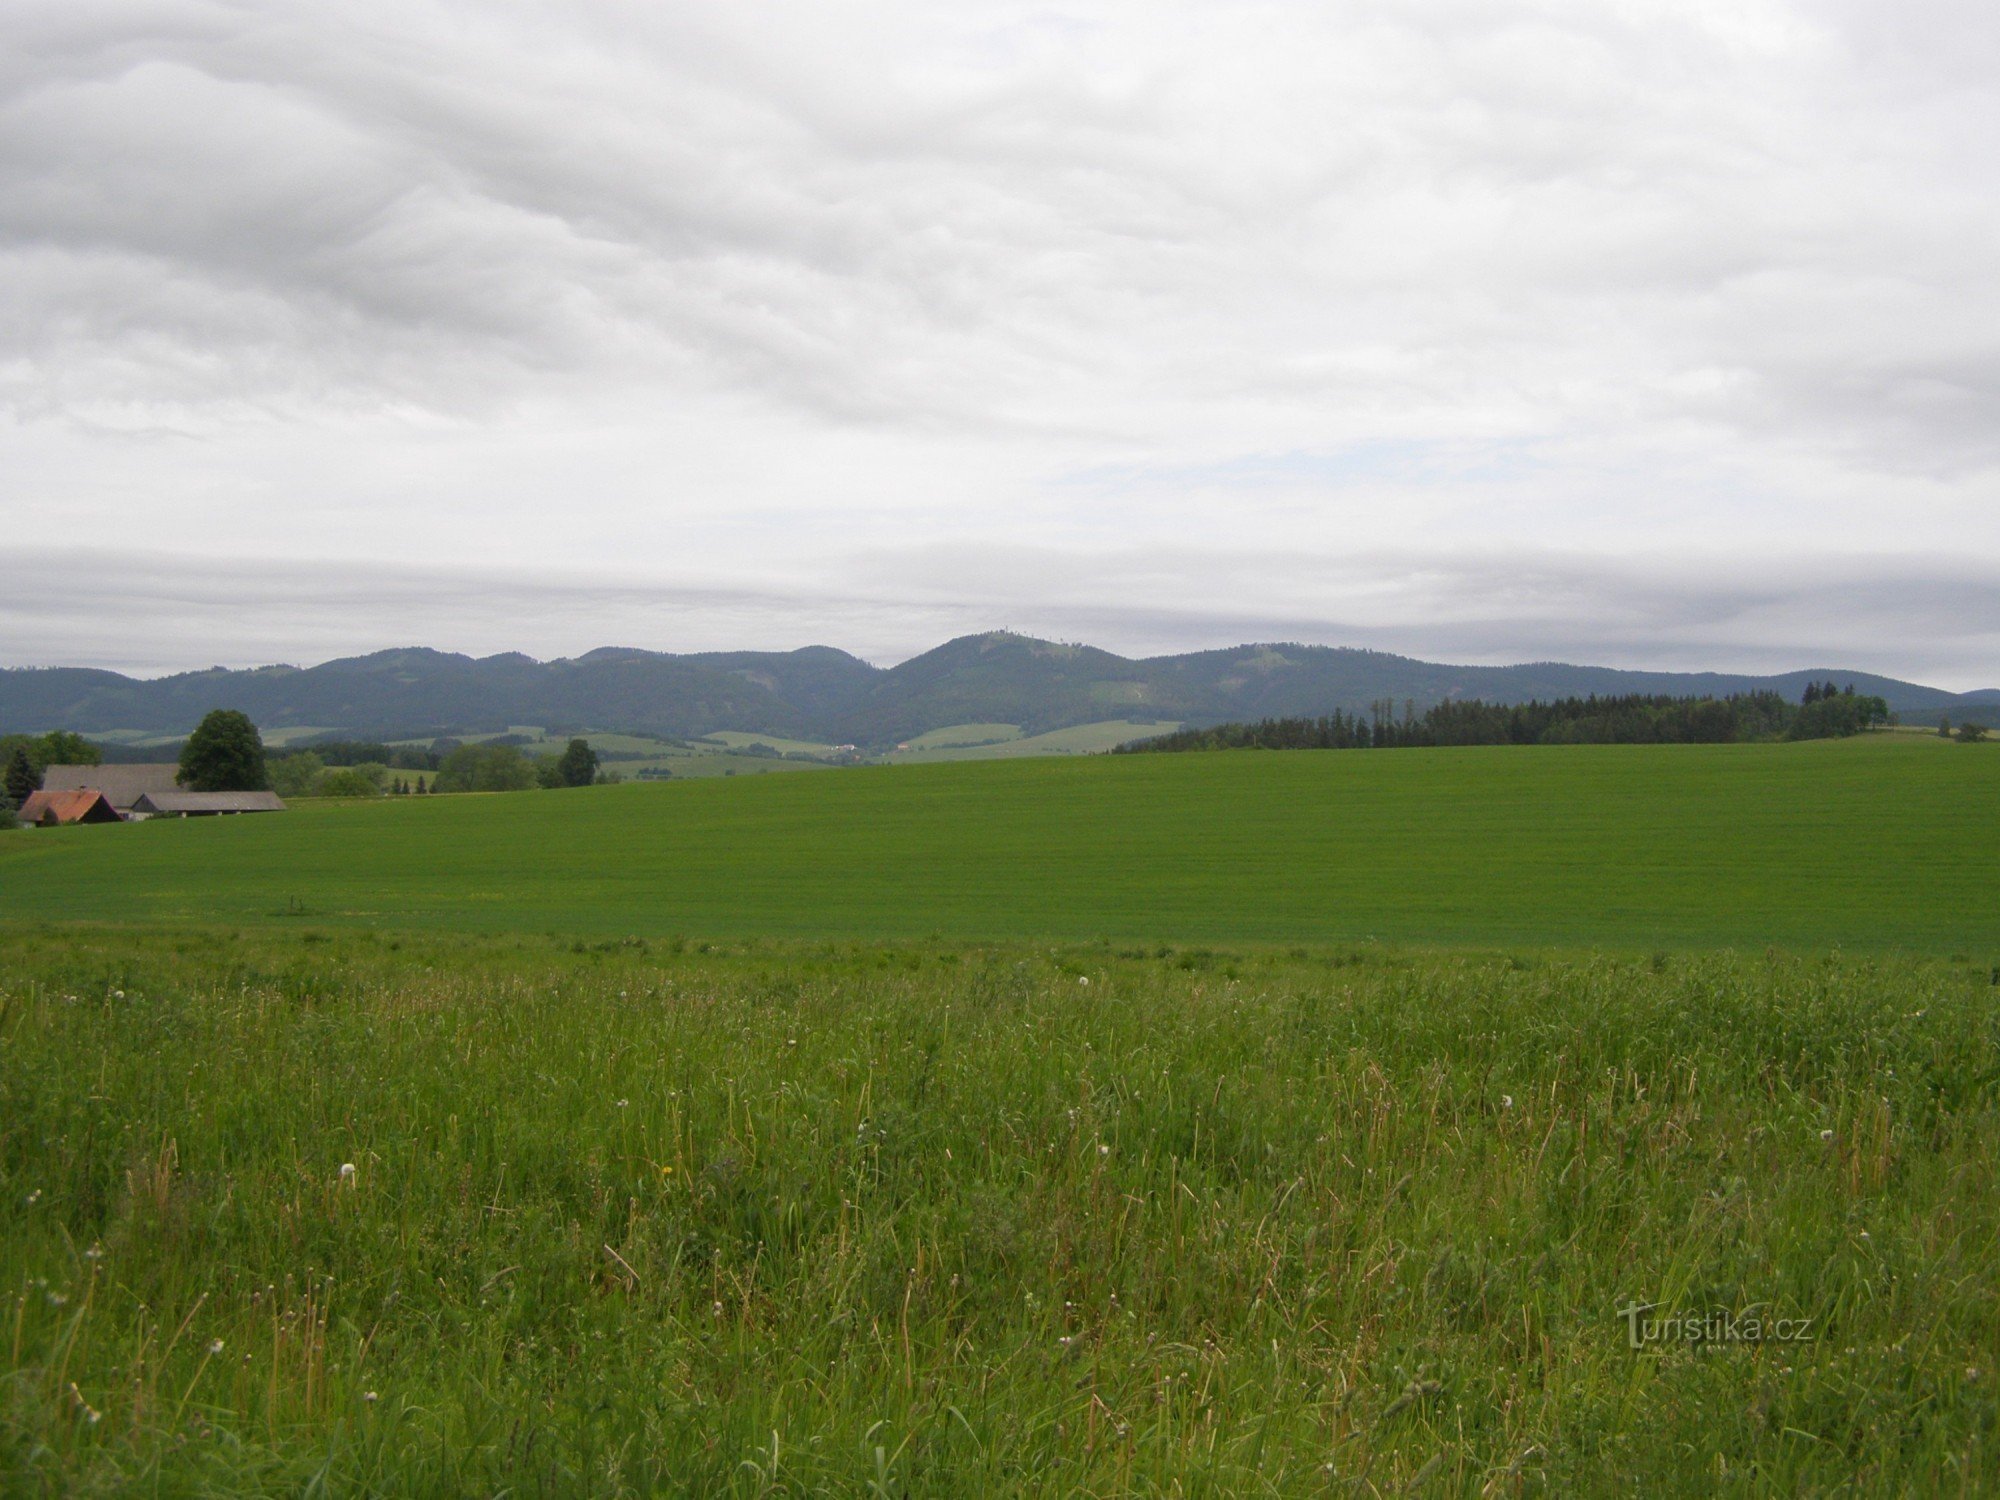 Vista das montanhas Javoří - perto da cruz